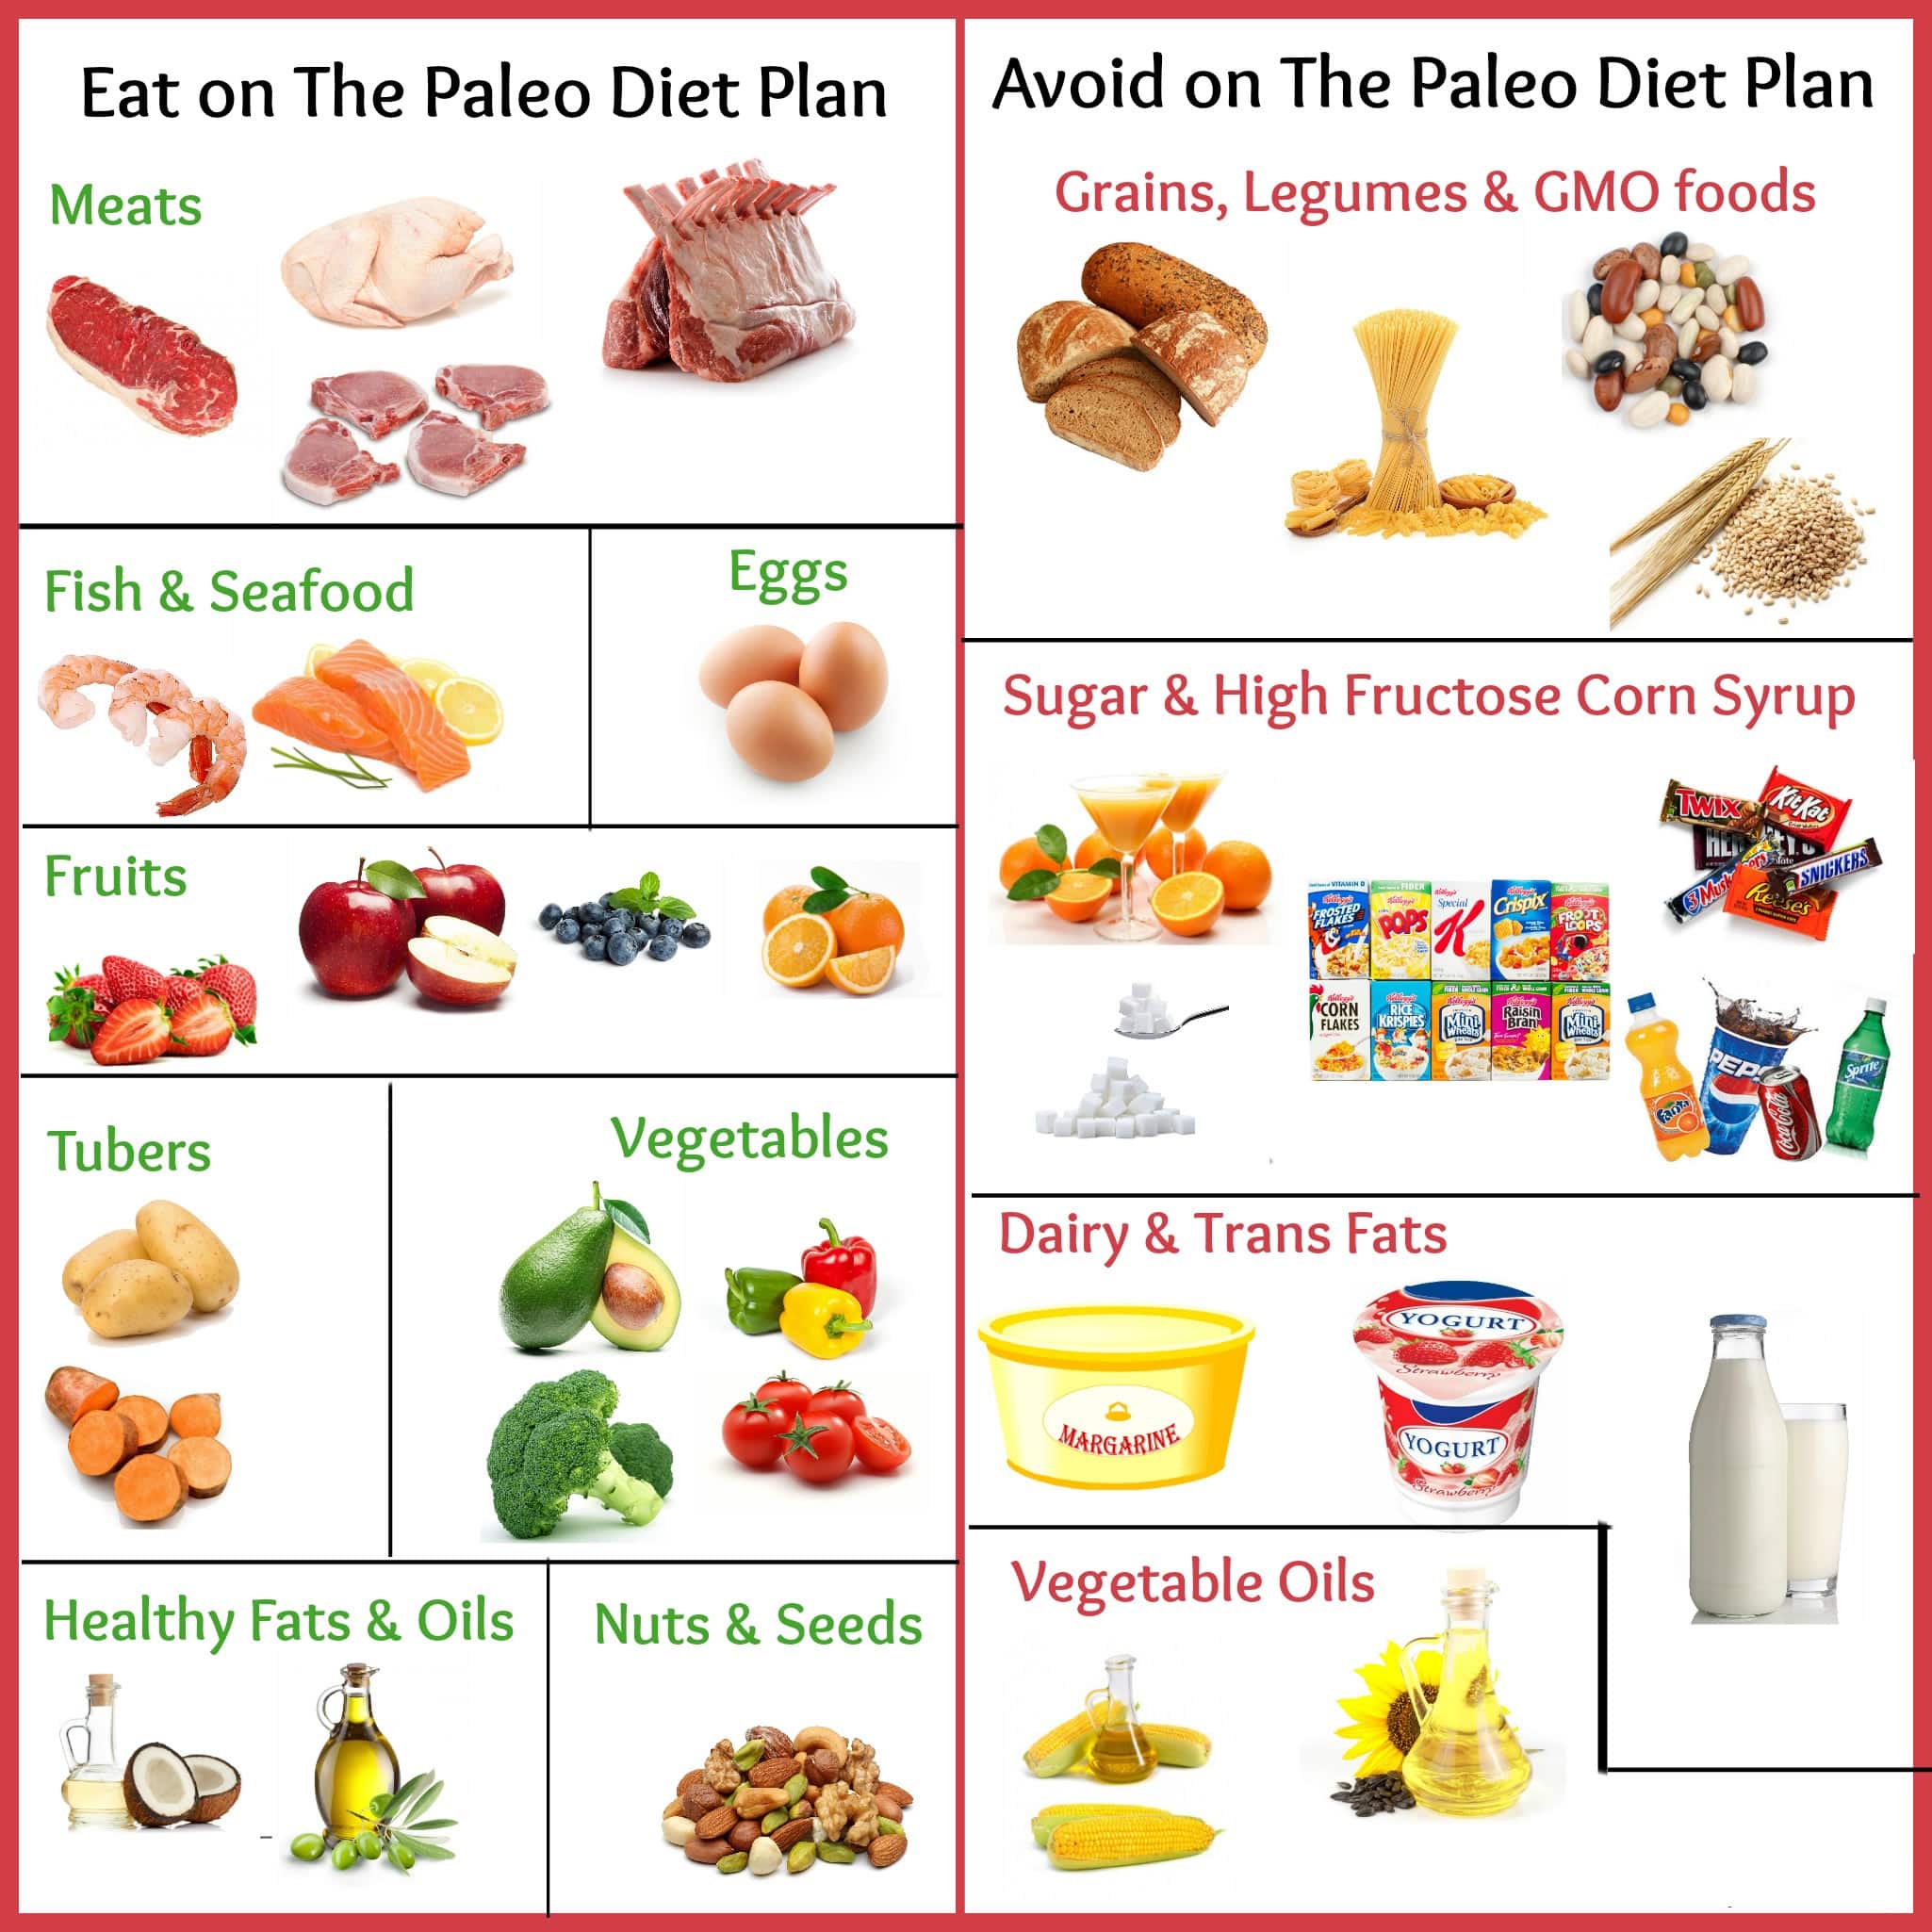 About Paleo Diet